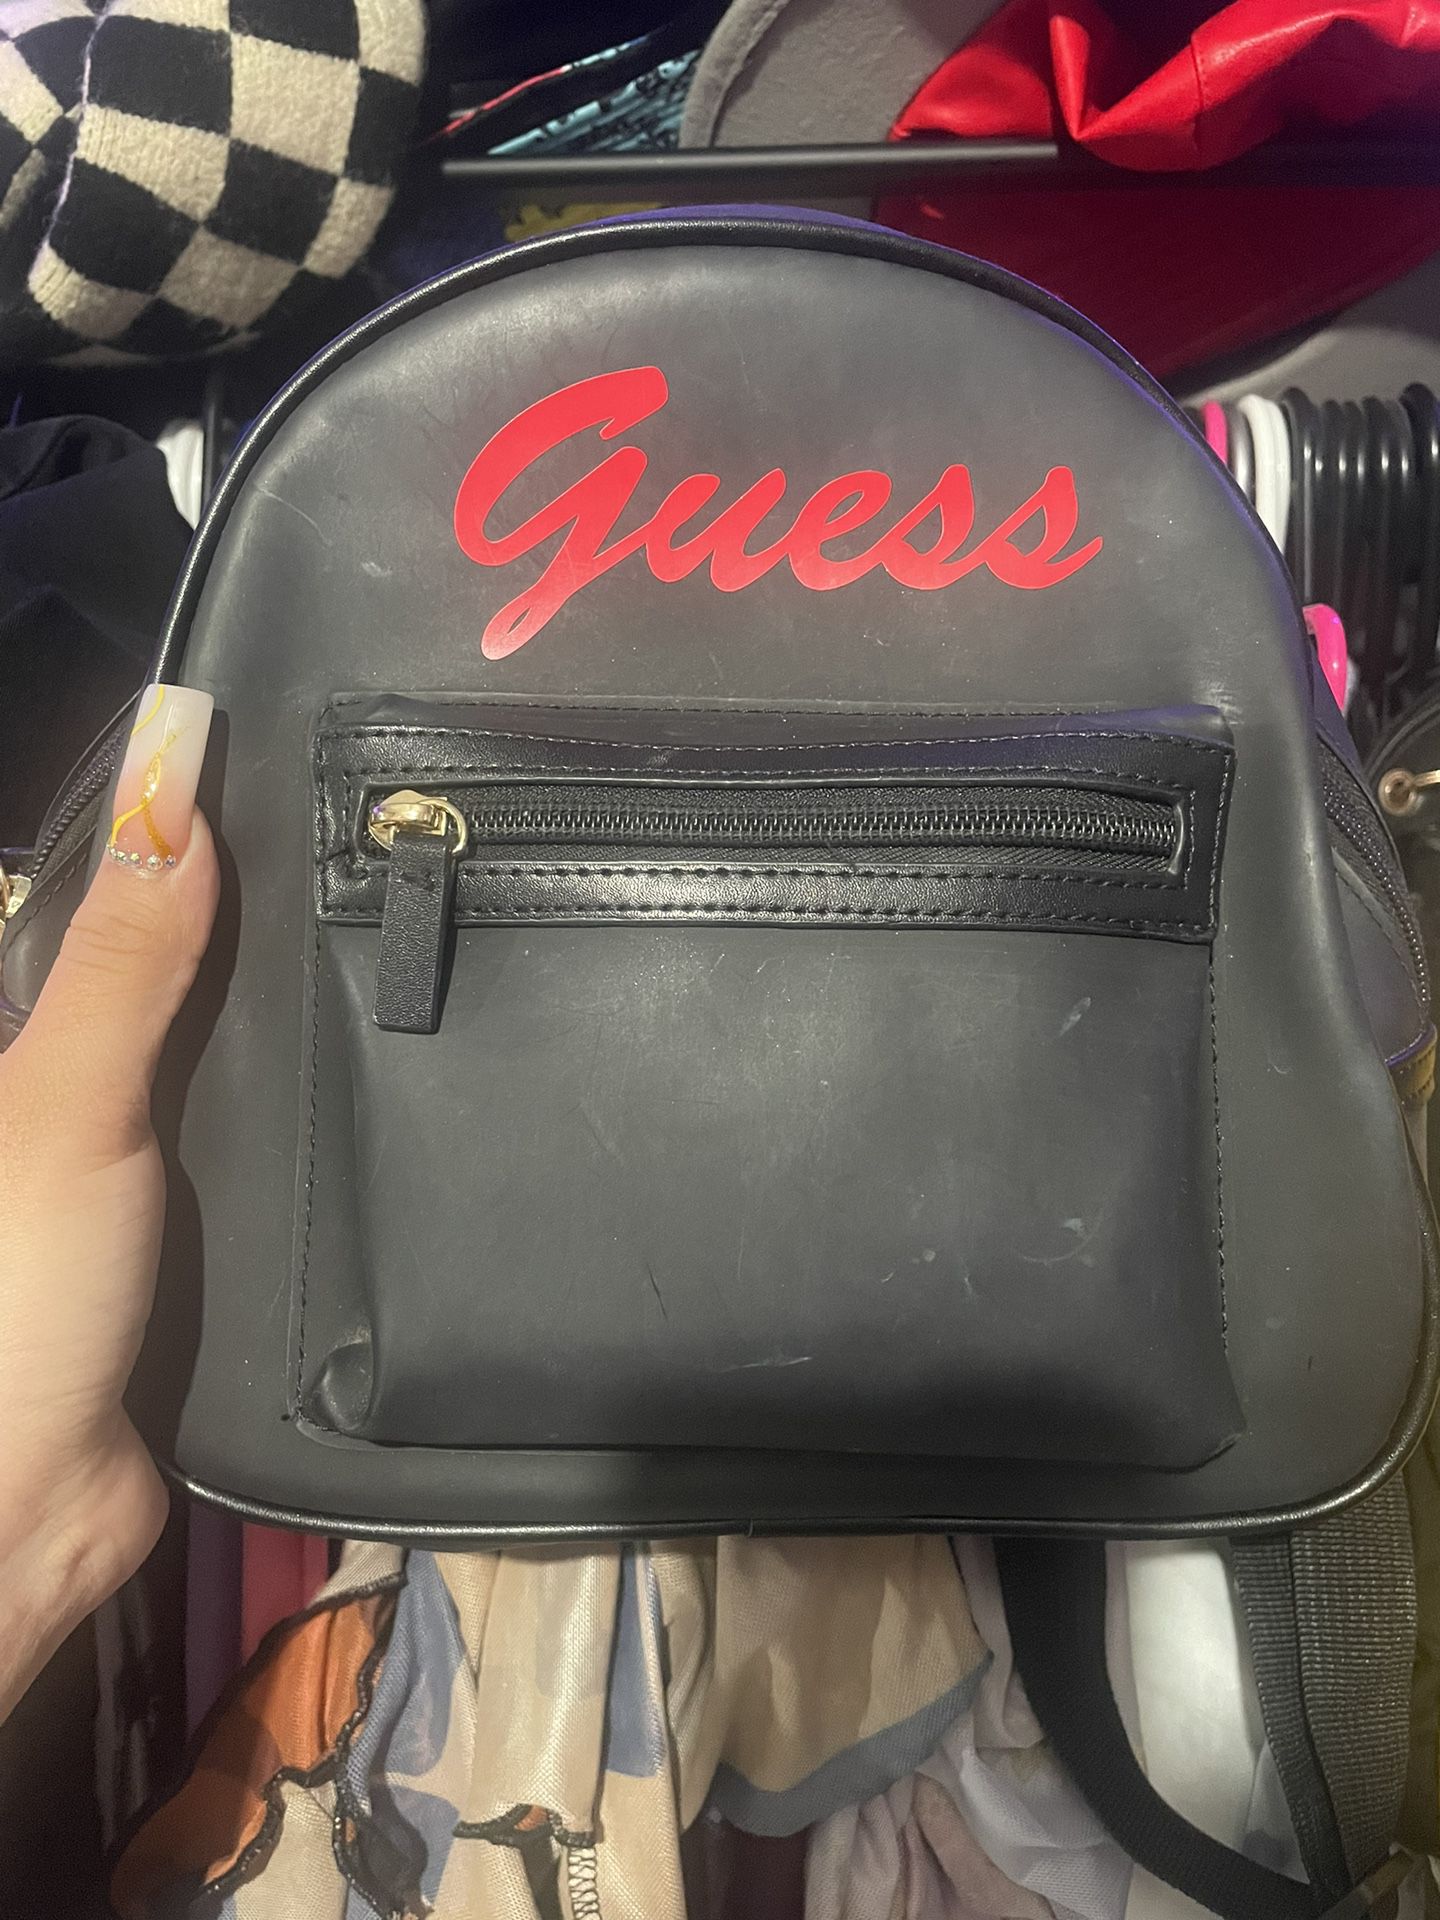 Guess Mini Backpack